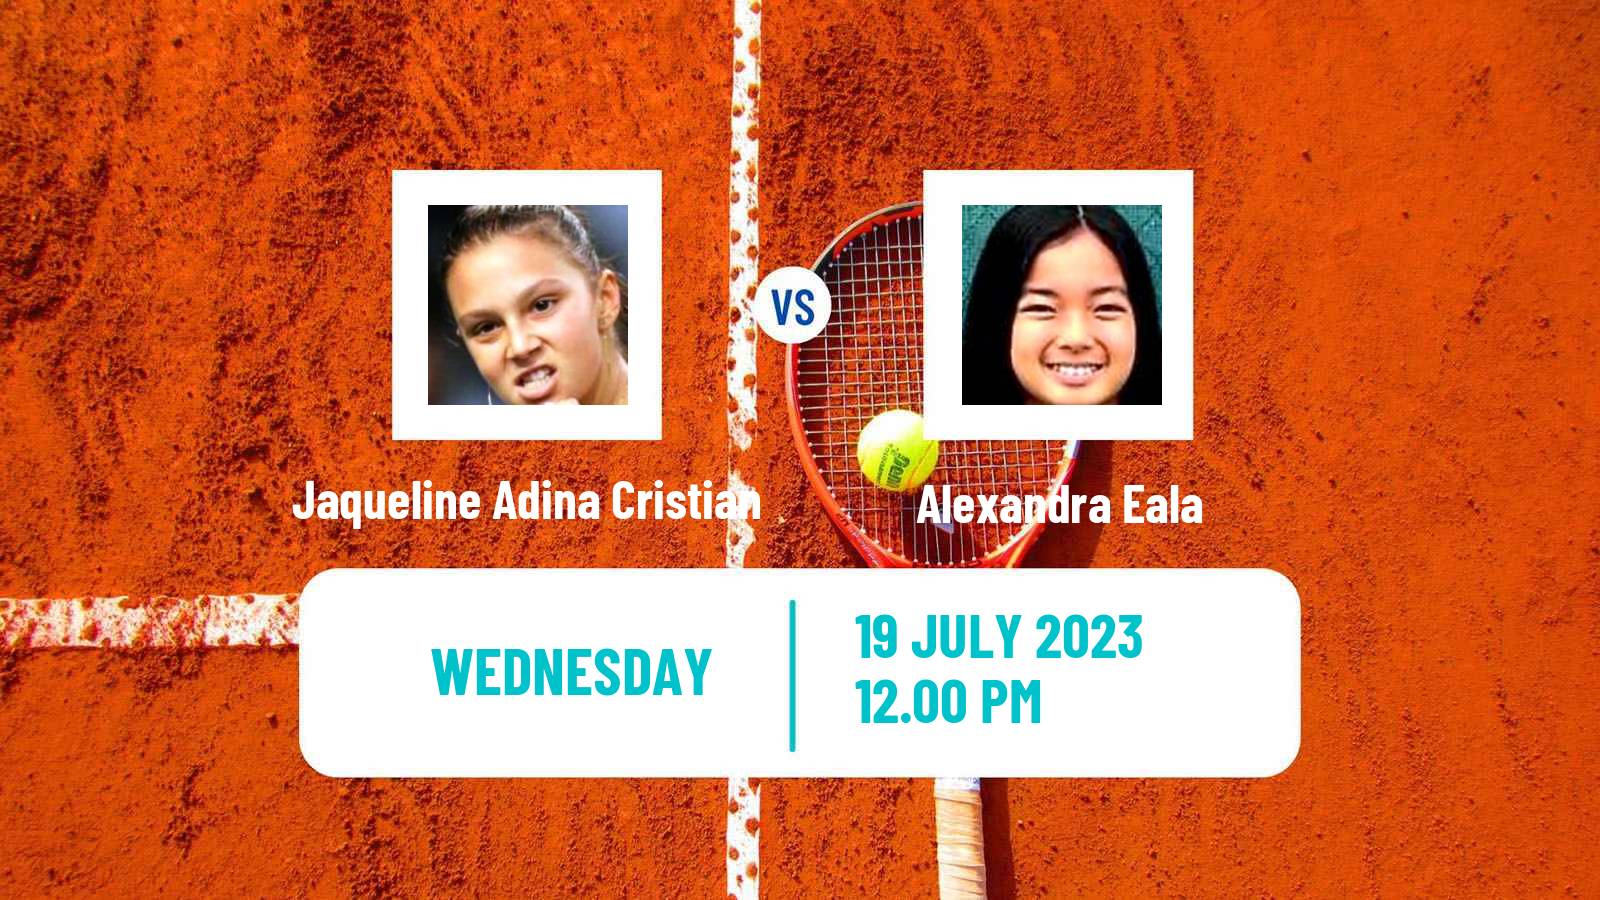 Tennis ITF W100 Vitoria Gasteiz Women 2023 Jaqueline Adina Cristian - Alexandra Eala